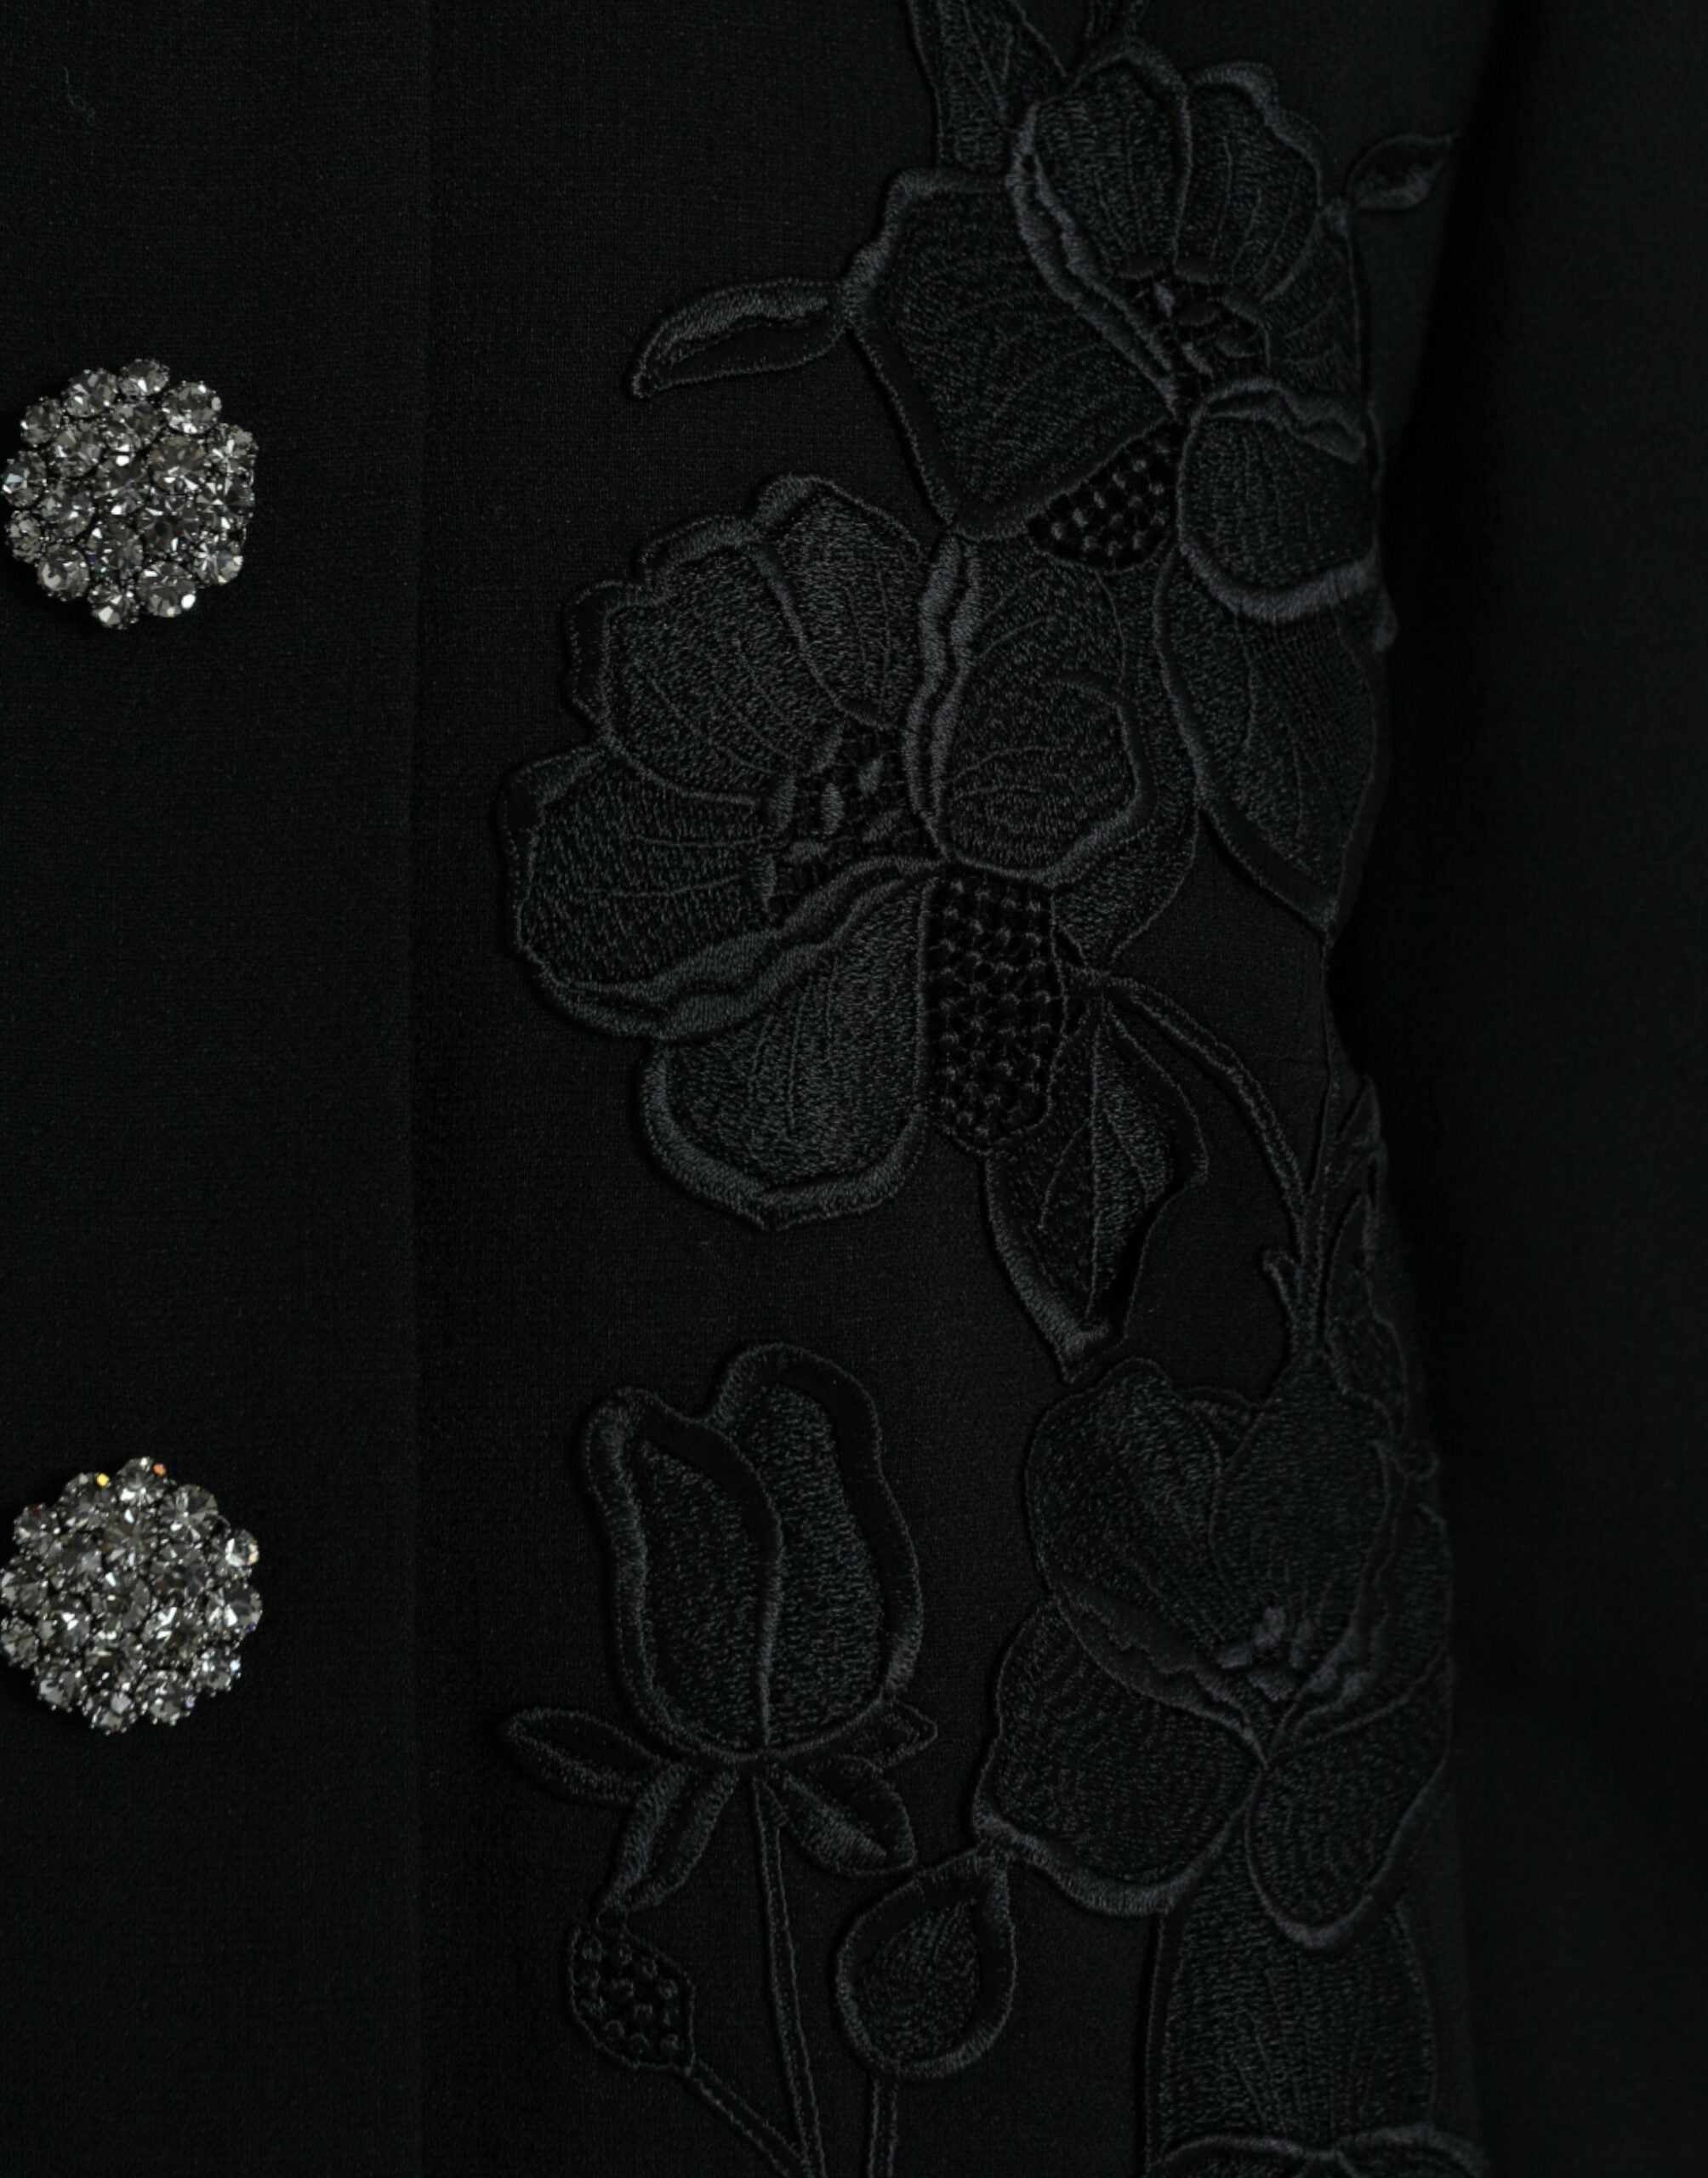 Dolce & Gabbana – Eleganter Trenchcoat aus Wolle mit Blumenmuster und Knöpfen